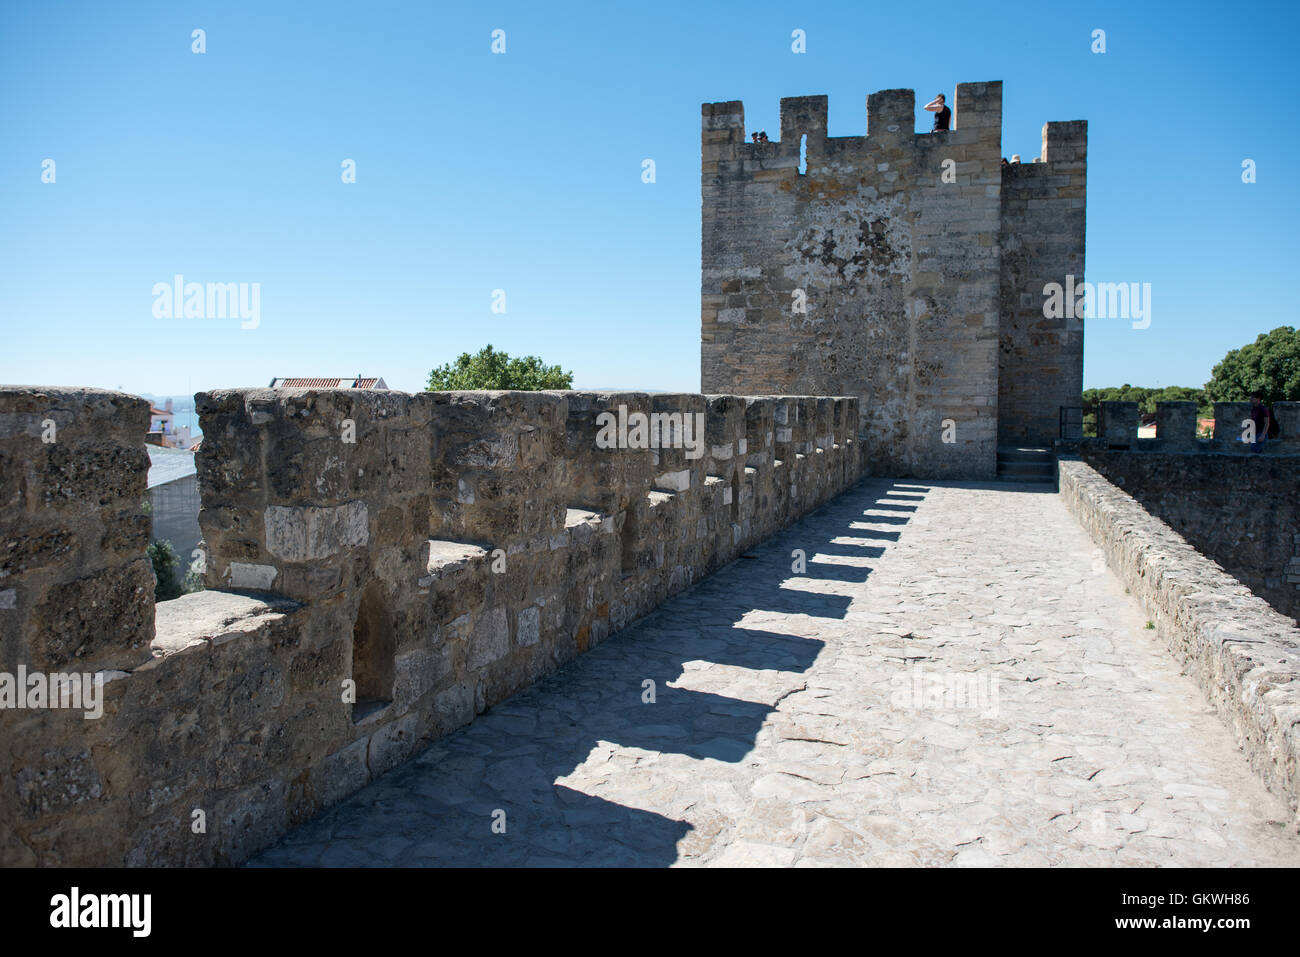 Lisbonne, Portugal - Assis au sommet d'une colline surplombant le centre de Lisbonne, le château São Jorge (ou château de São Jorge ou Saint George Castle) est un château mauresque. Fortifications ont existé sur le site à des milliers d'années, et l'actuelle date de murs distinctif du 14ème siècle. Banque D'Images